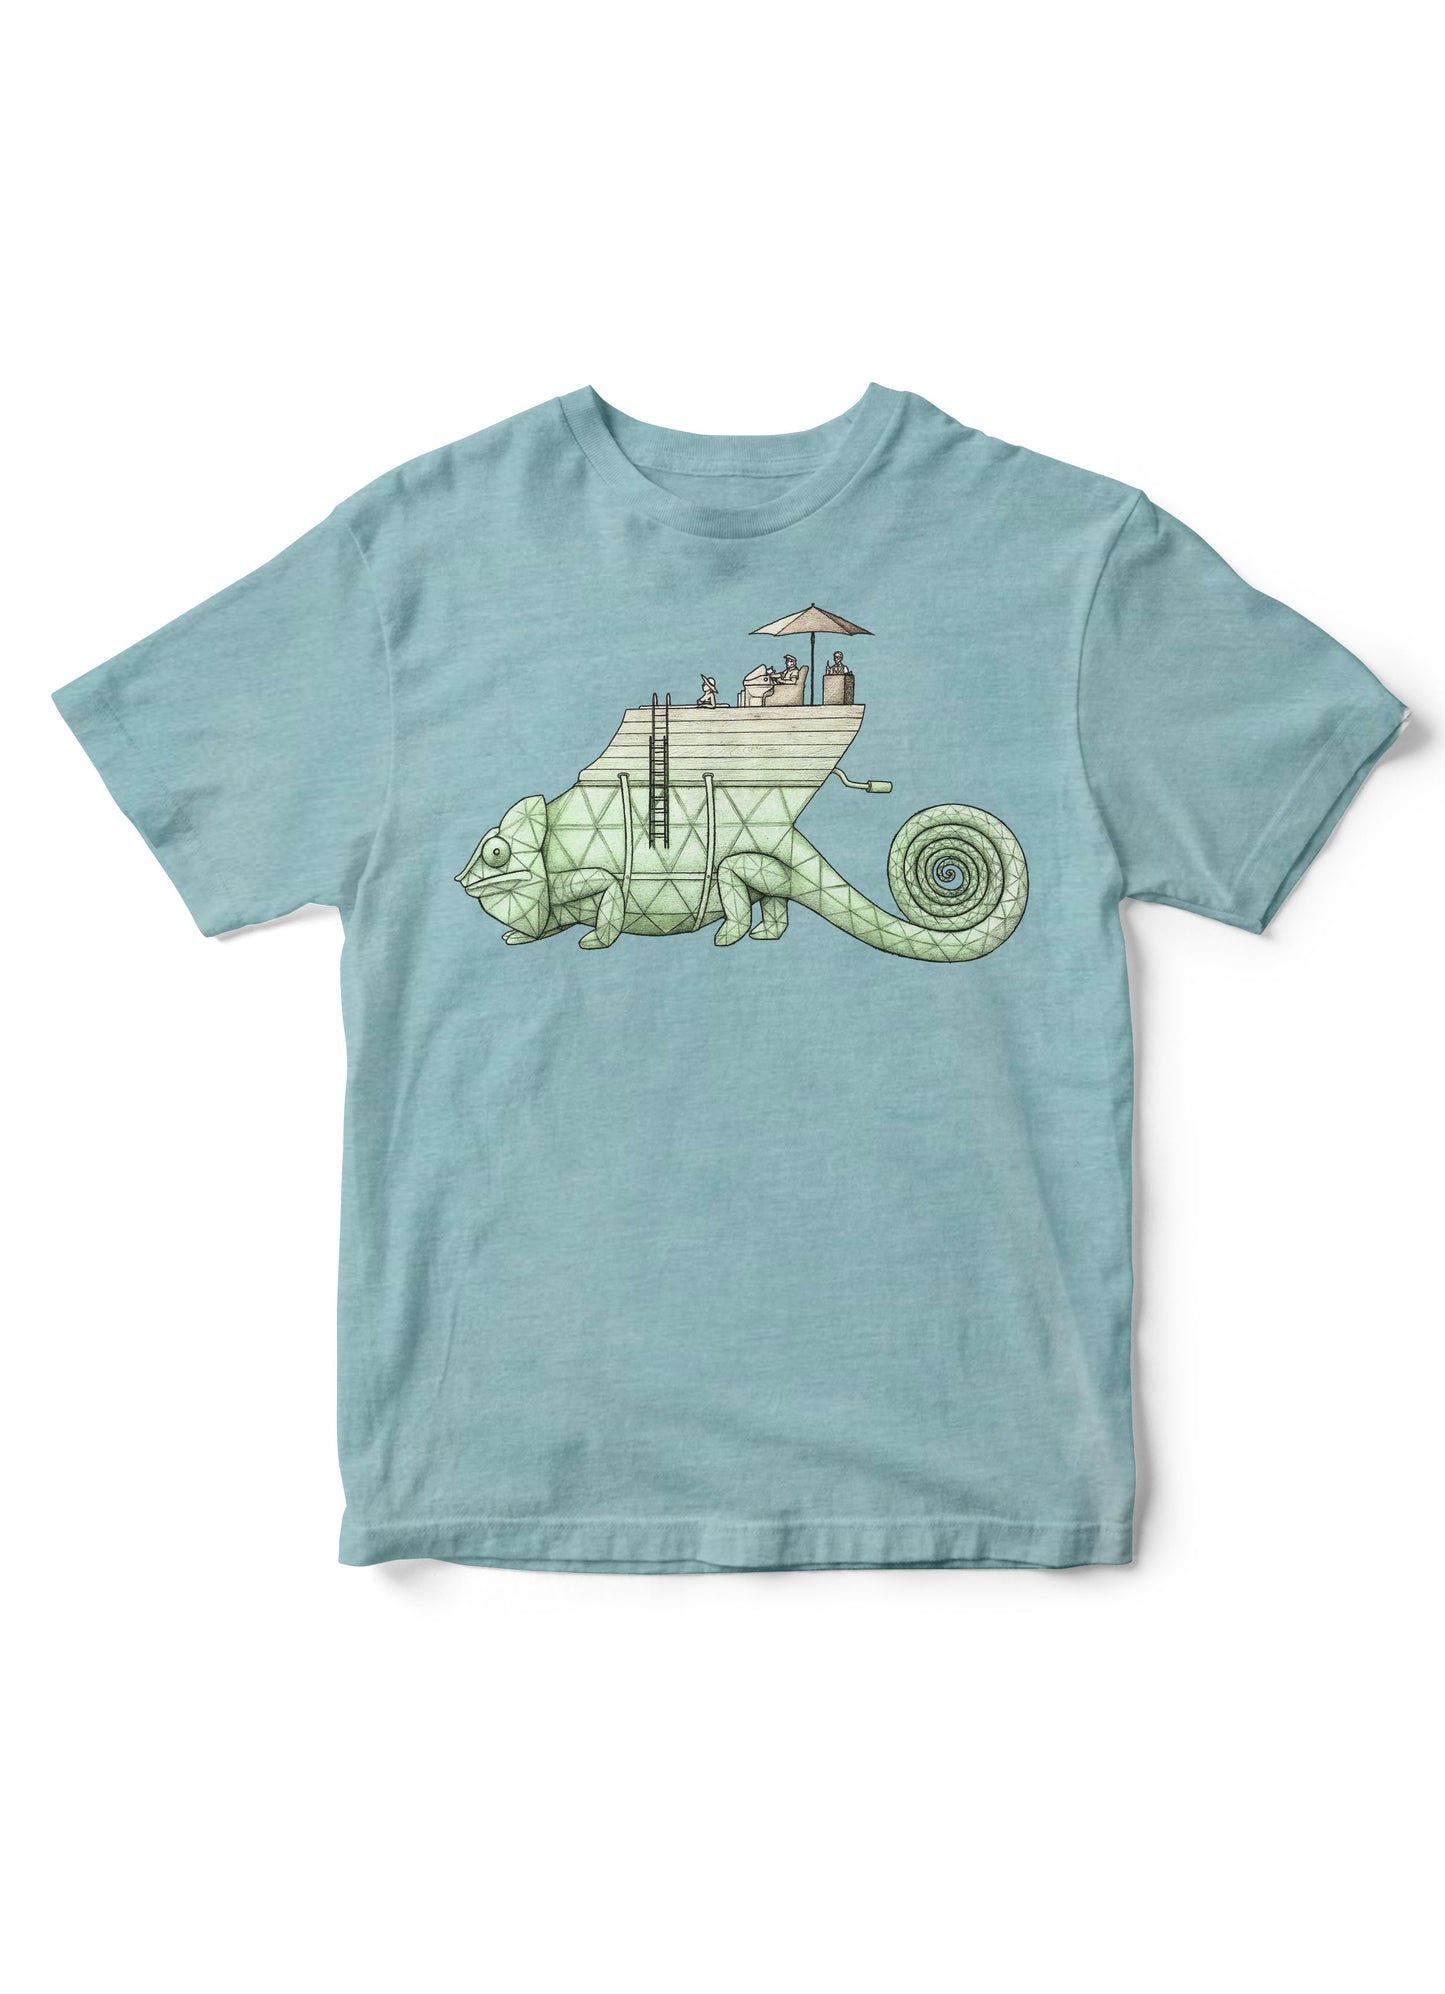 lizard shirt for kids, reptile shirt for kids, lizard tshirt, Vincent Fink